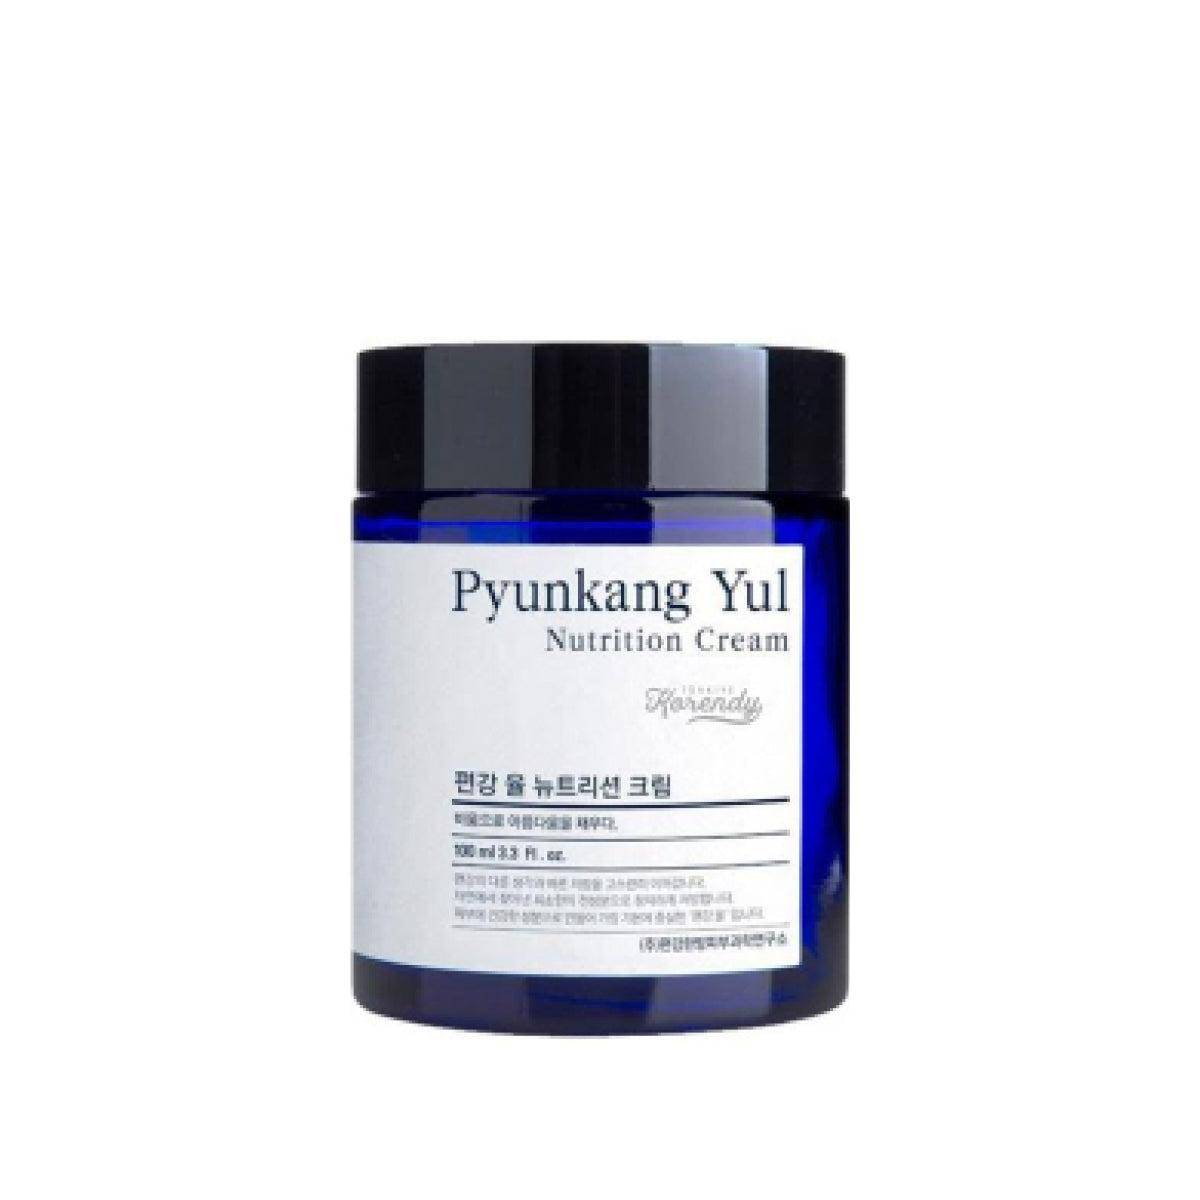 Pyunkang Yul - Nutrition Cream 100ml Krem Korendy Türkiye Turkey Kore Kozmetik Kbeauty Cilt Bakım 